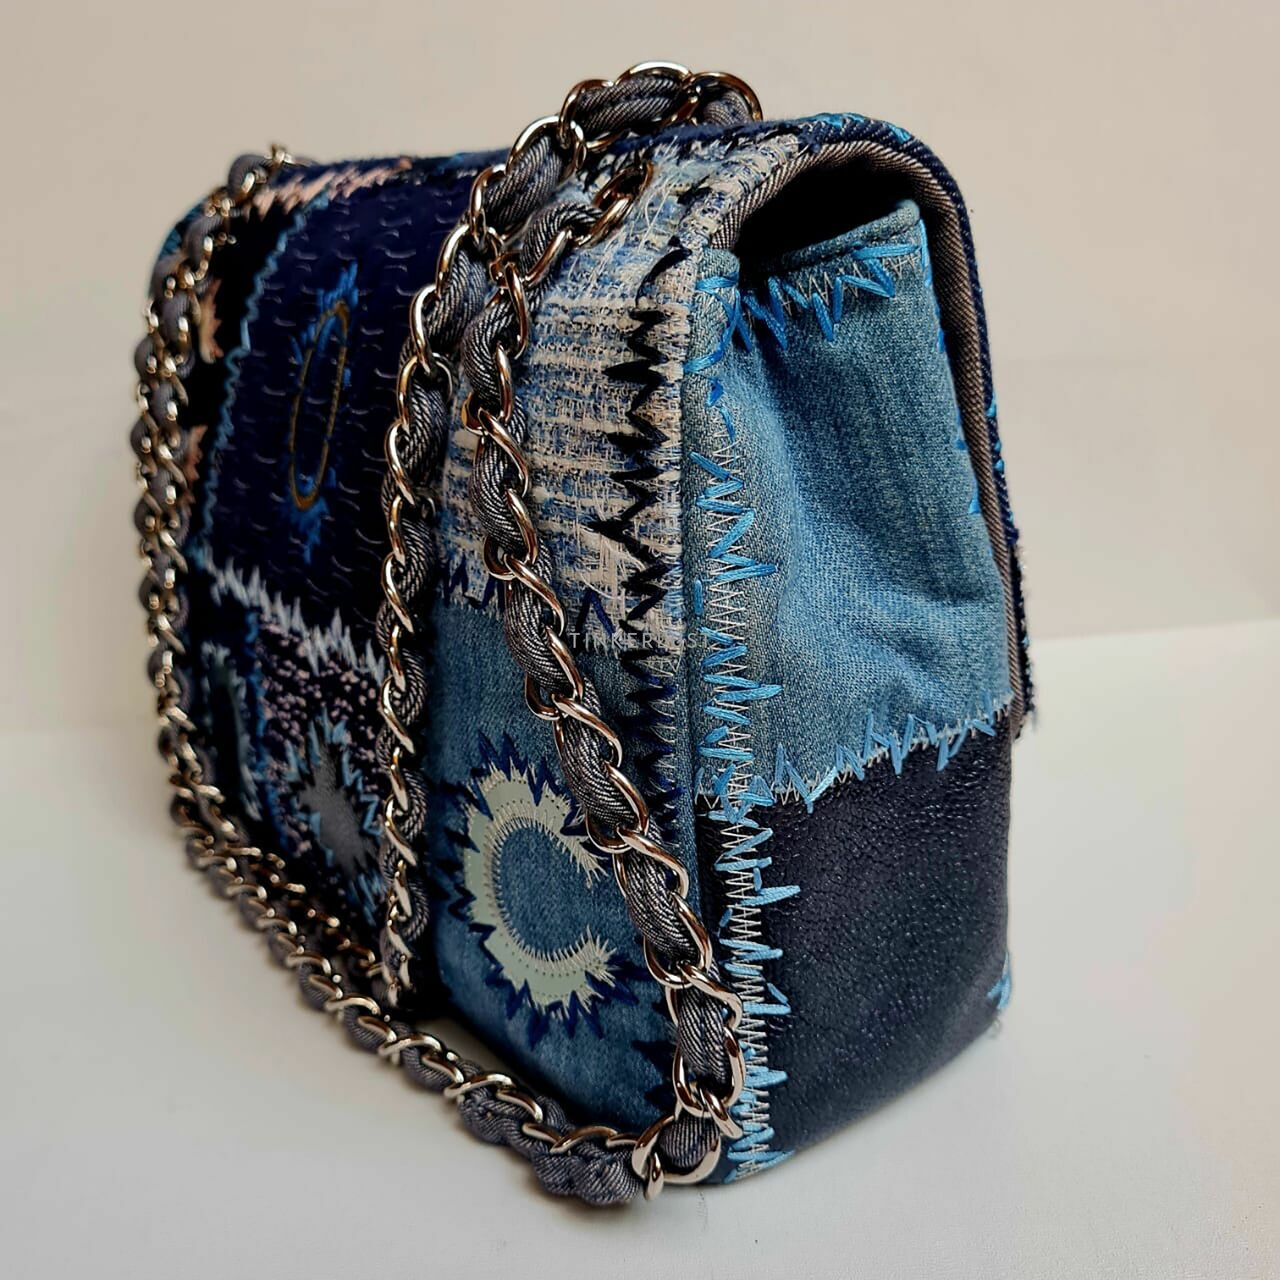 Chanel Jumbo Patchwork Shoulder Bag 